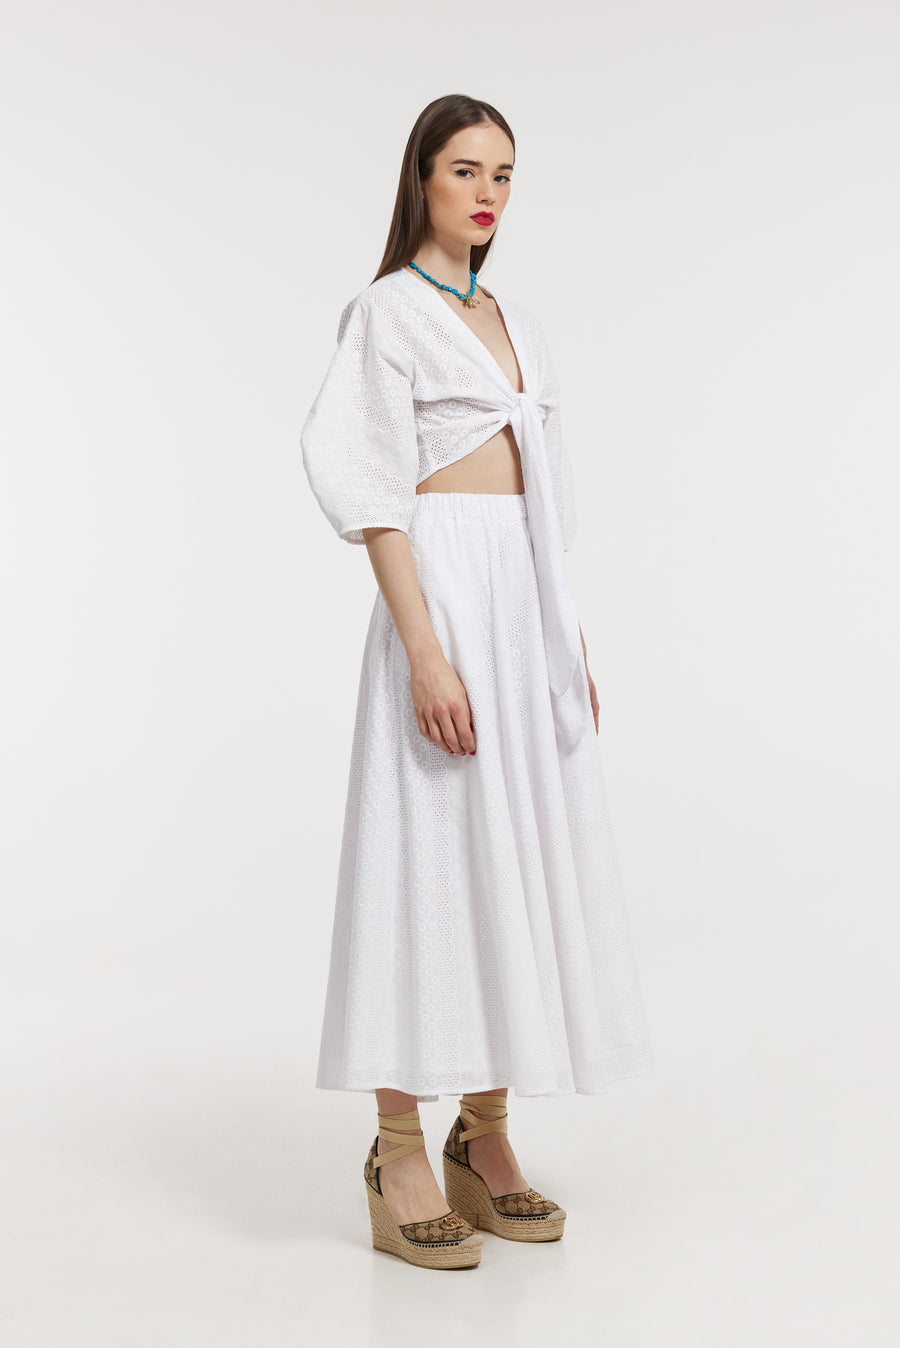 Thalia Skirt (White lace)